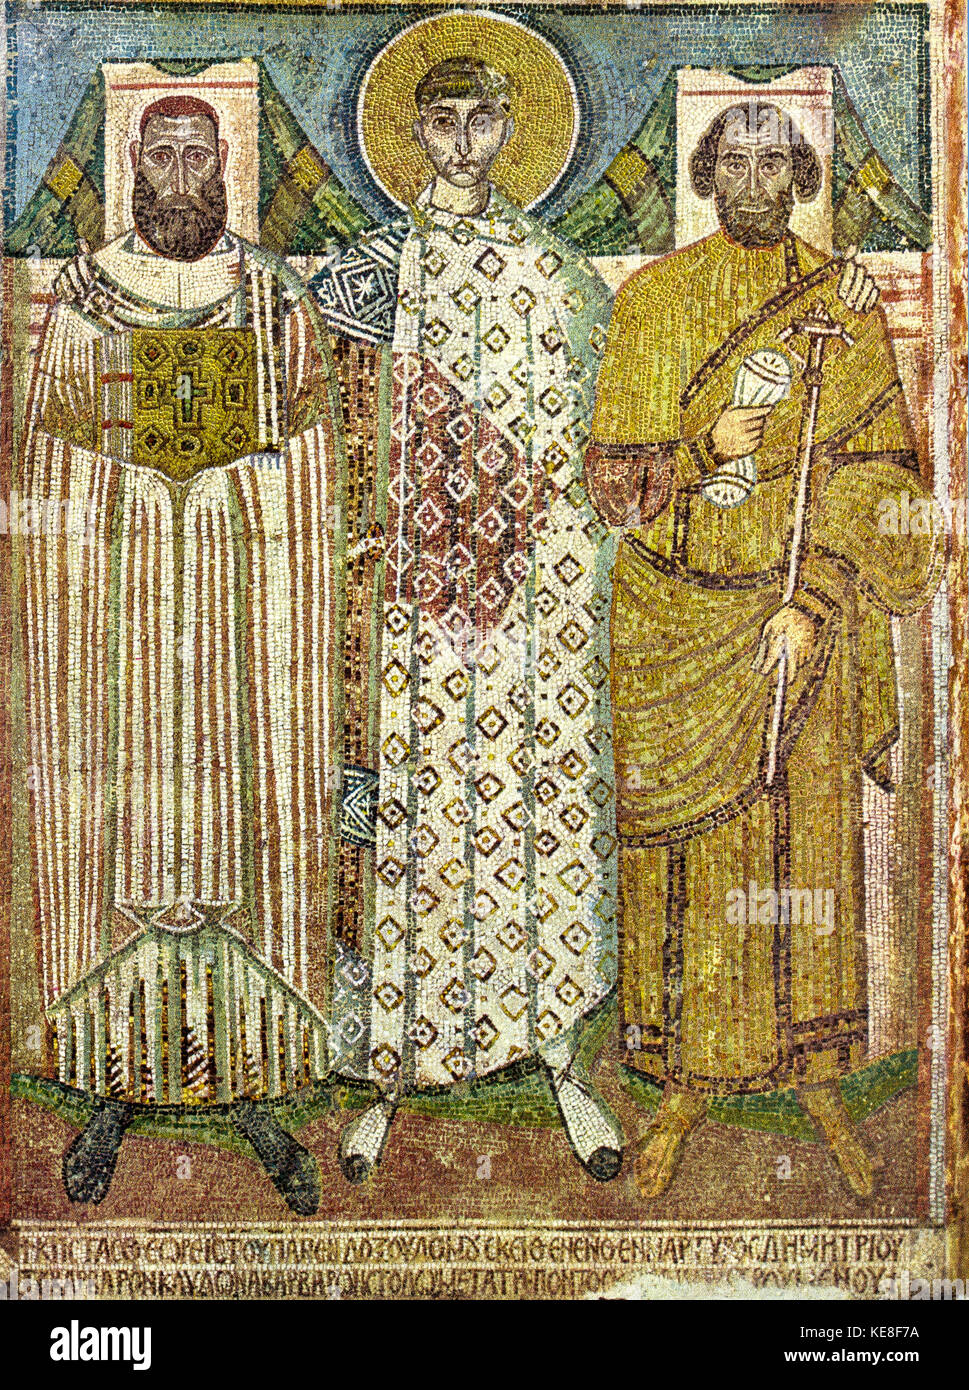 Griechenland thessaloniki Basilika San demetrios - Mosaik des Heiligen Demetrios und Geber Stockfoto